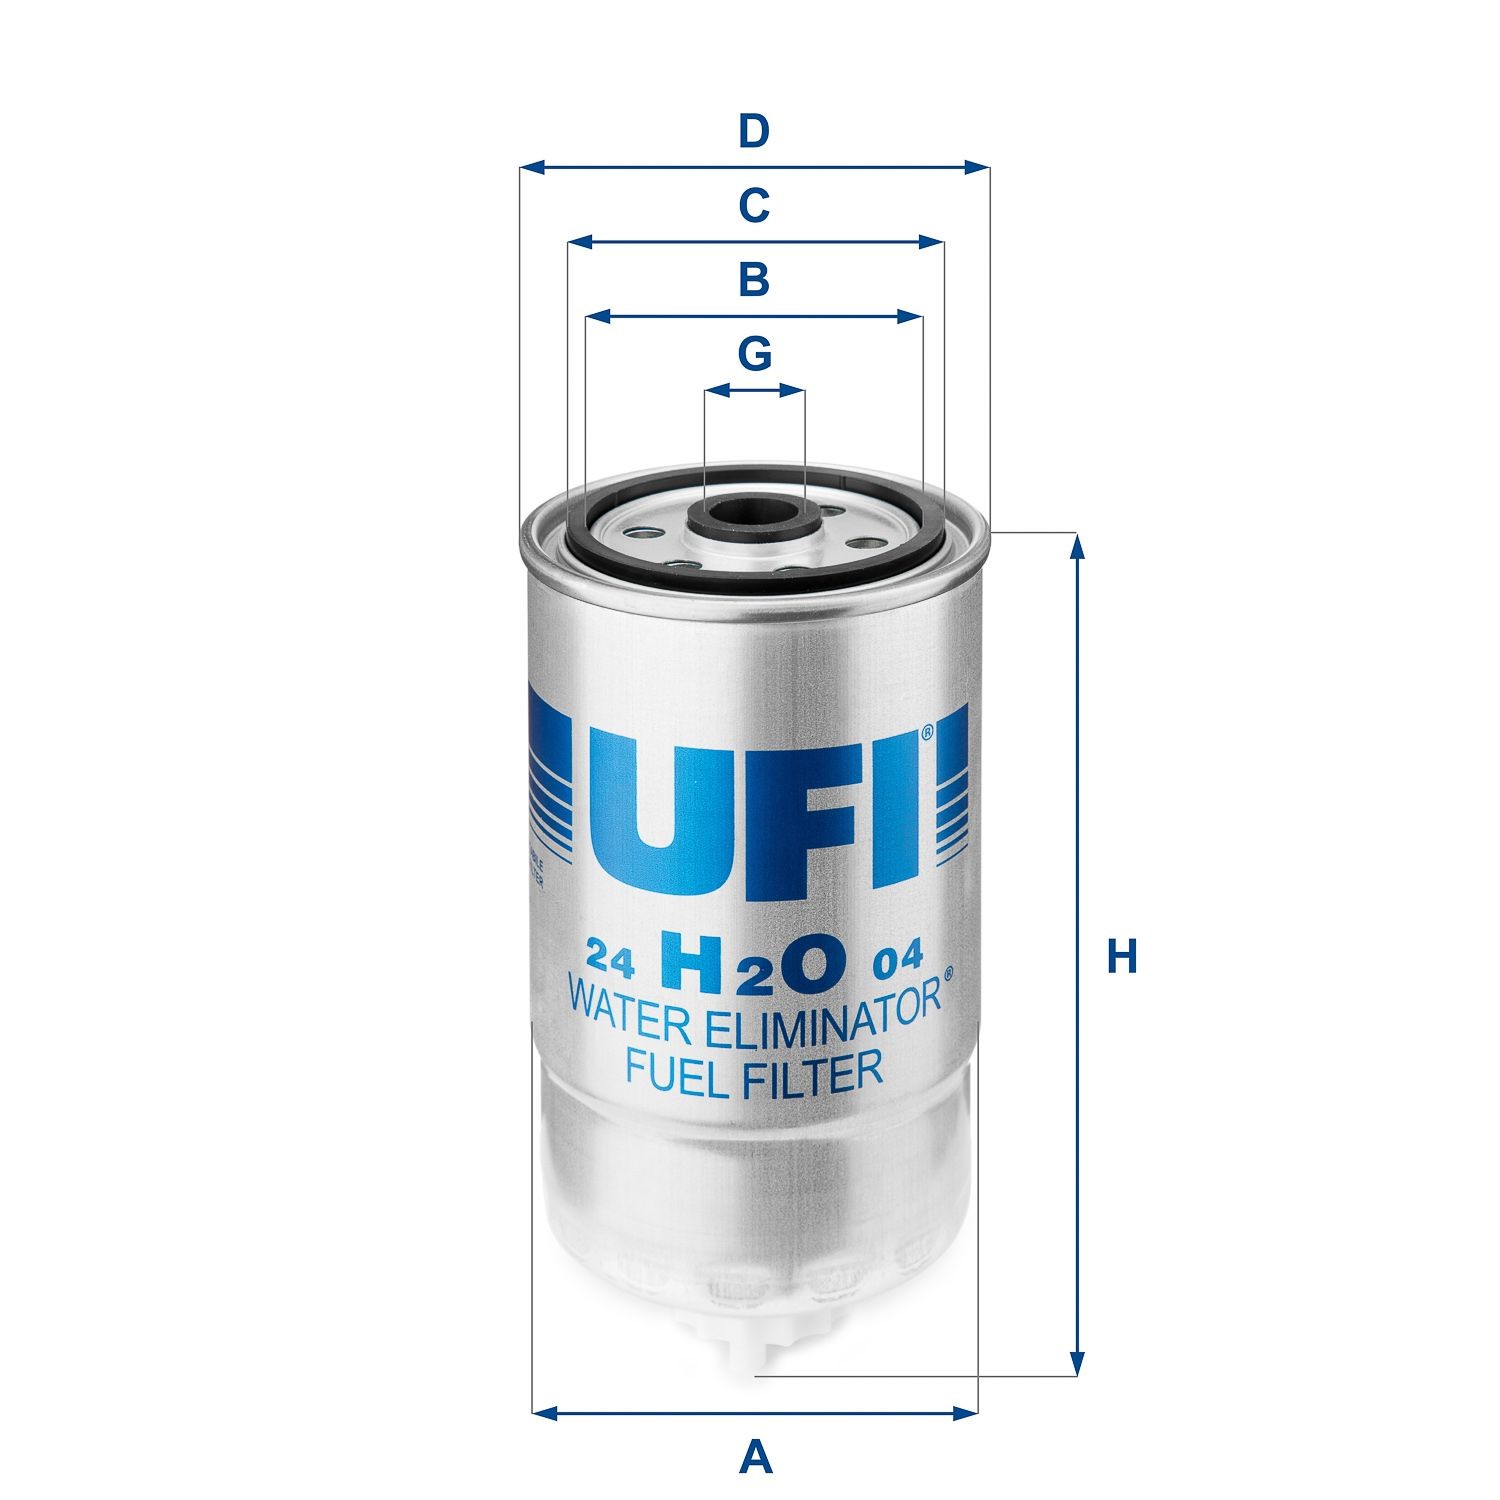 UFI 24.H2O.04 Fuel filters Filter Insert